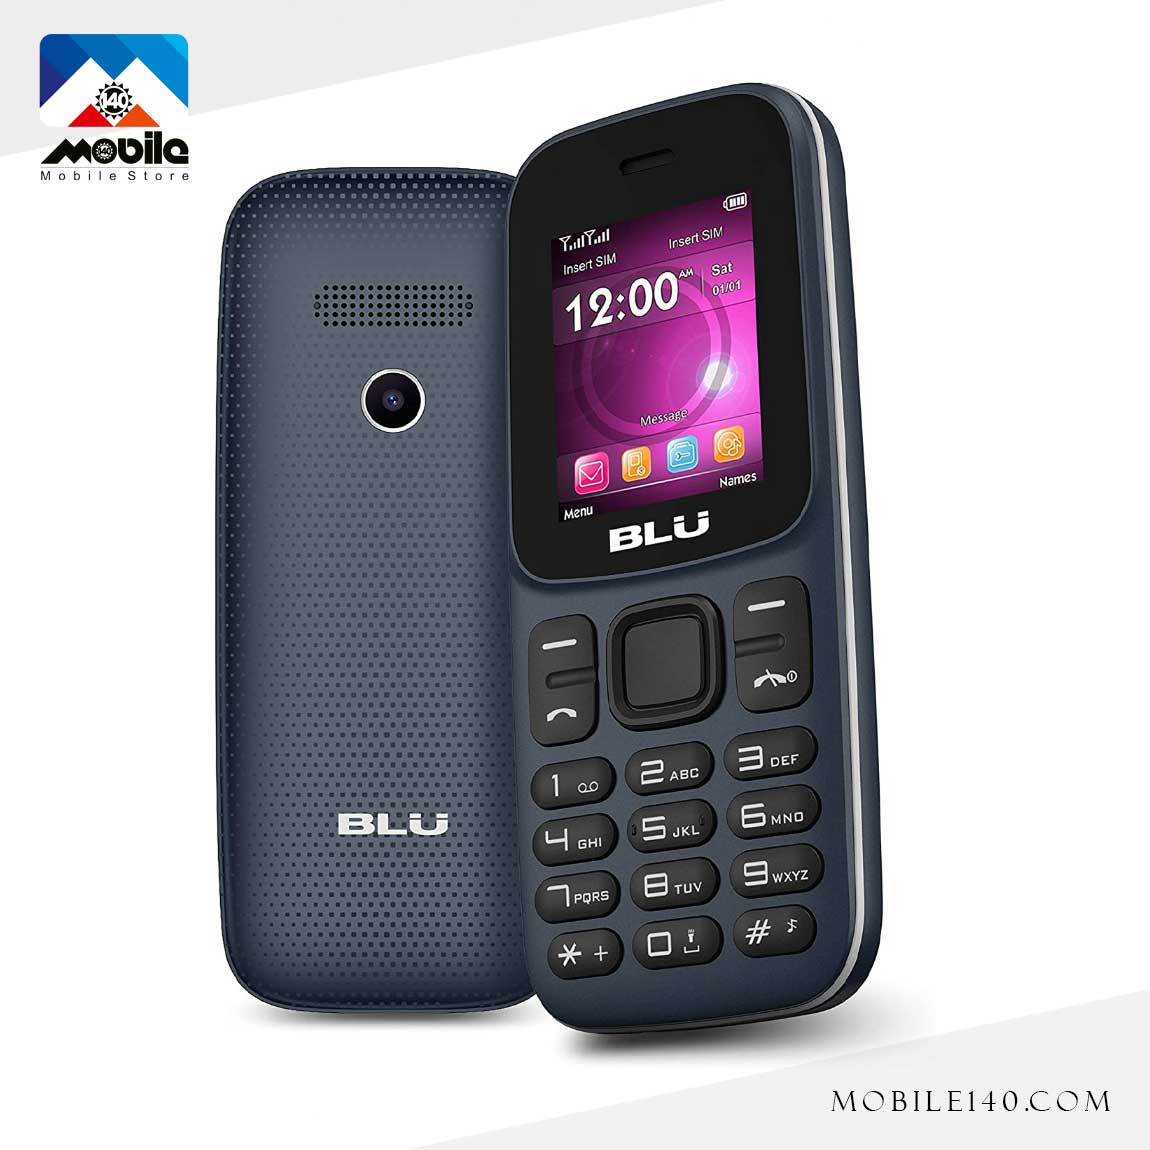 Blu Z5 Mobile Phone 1